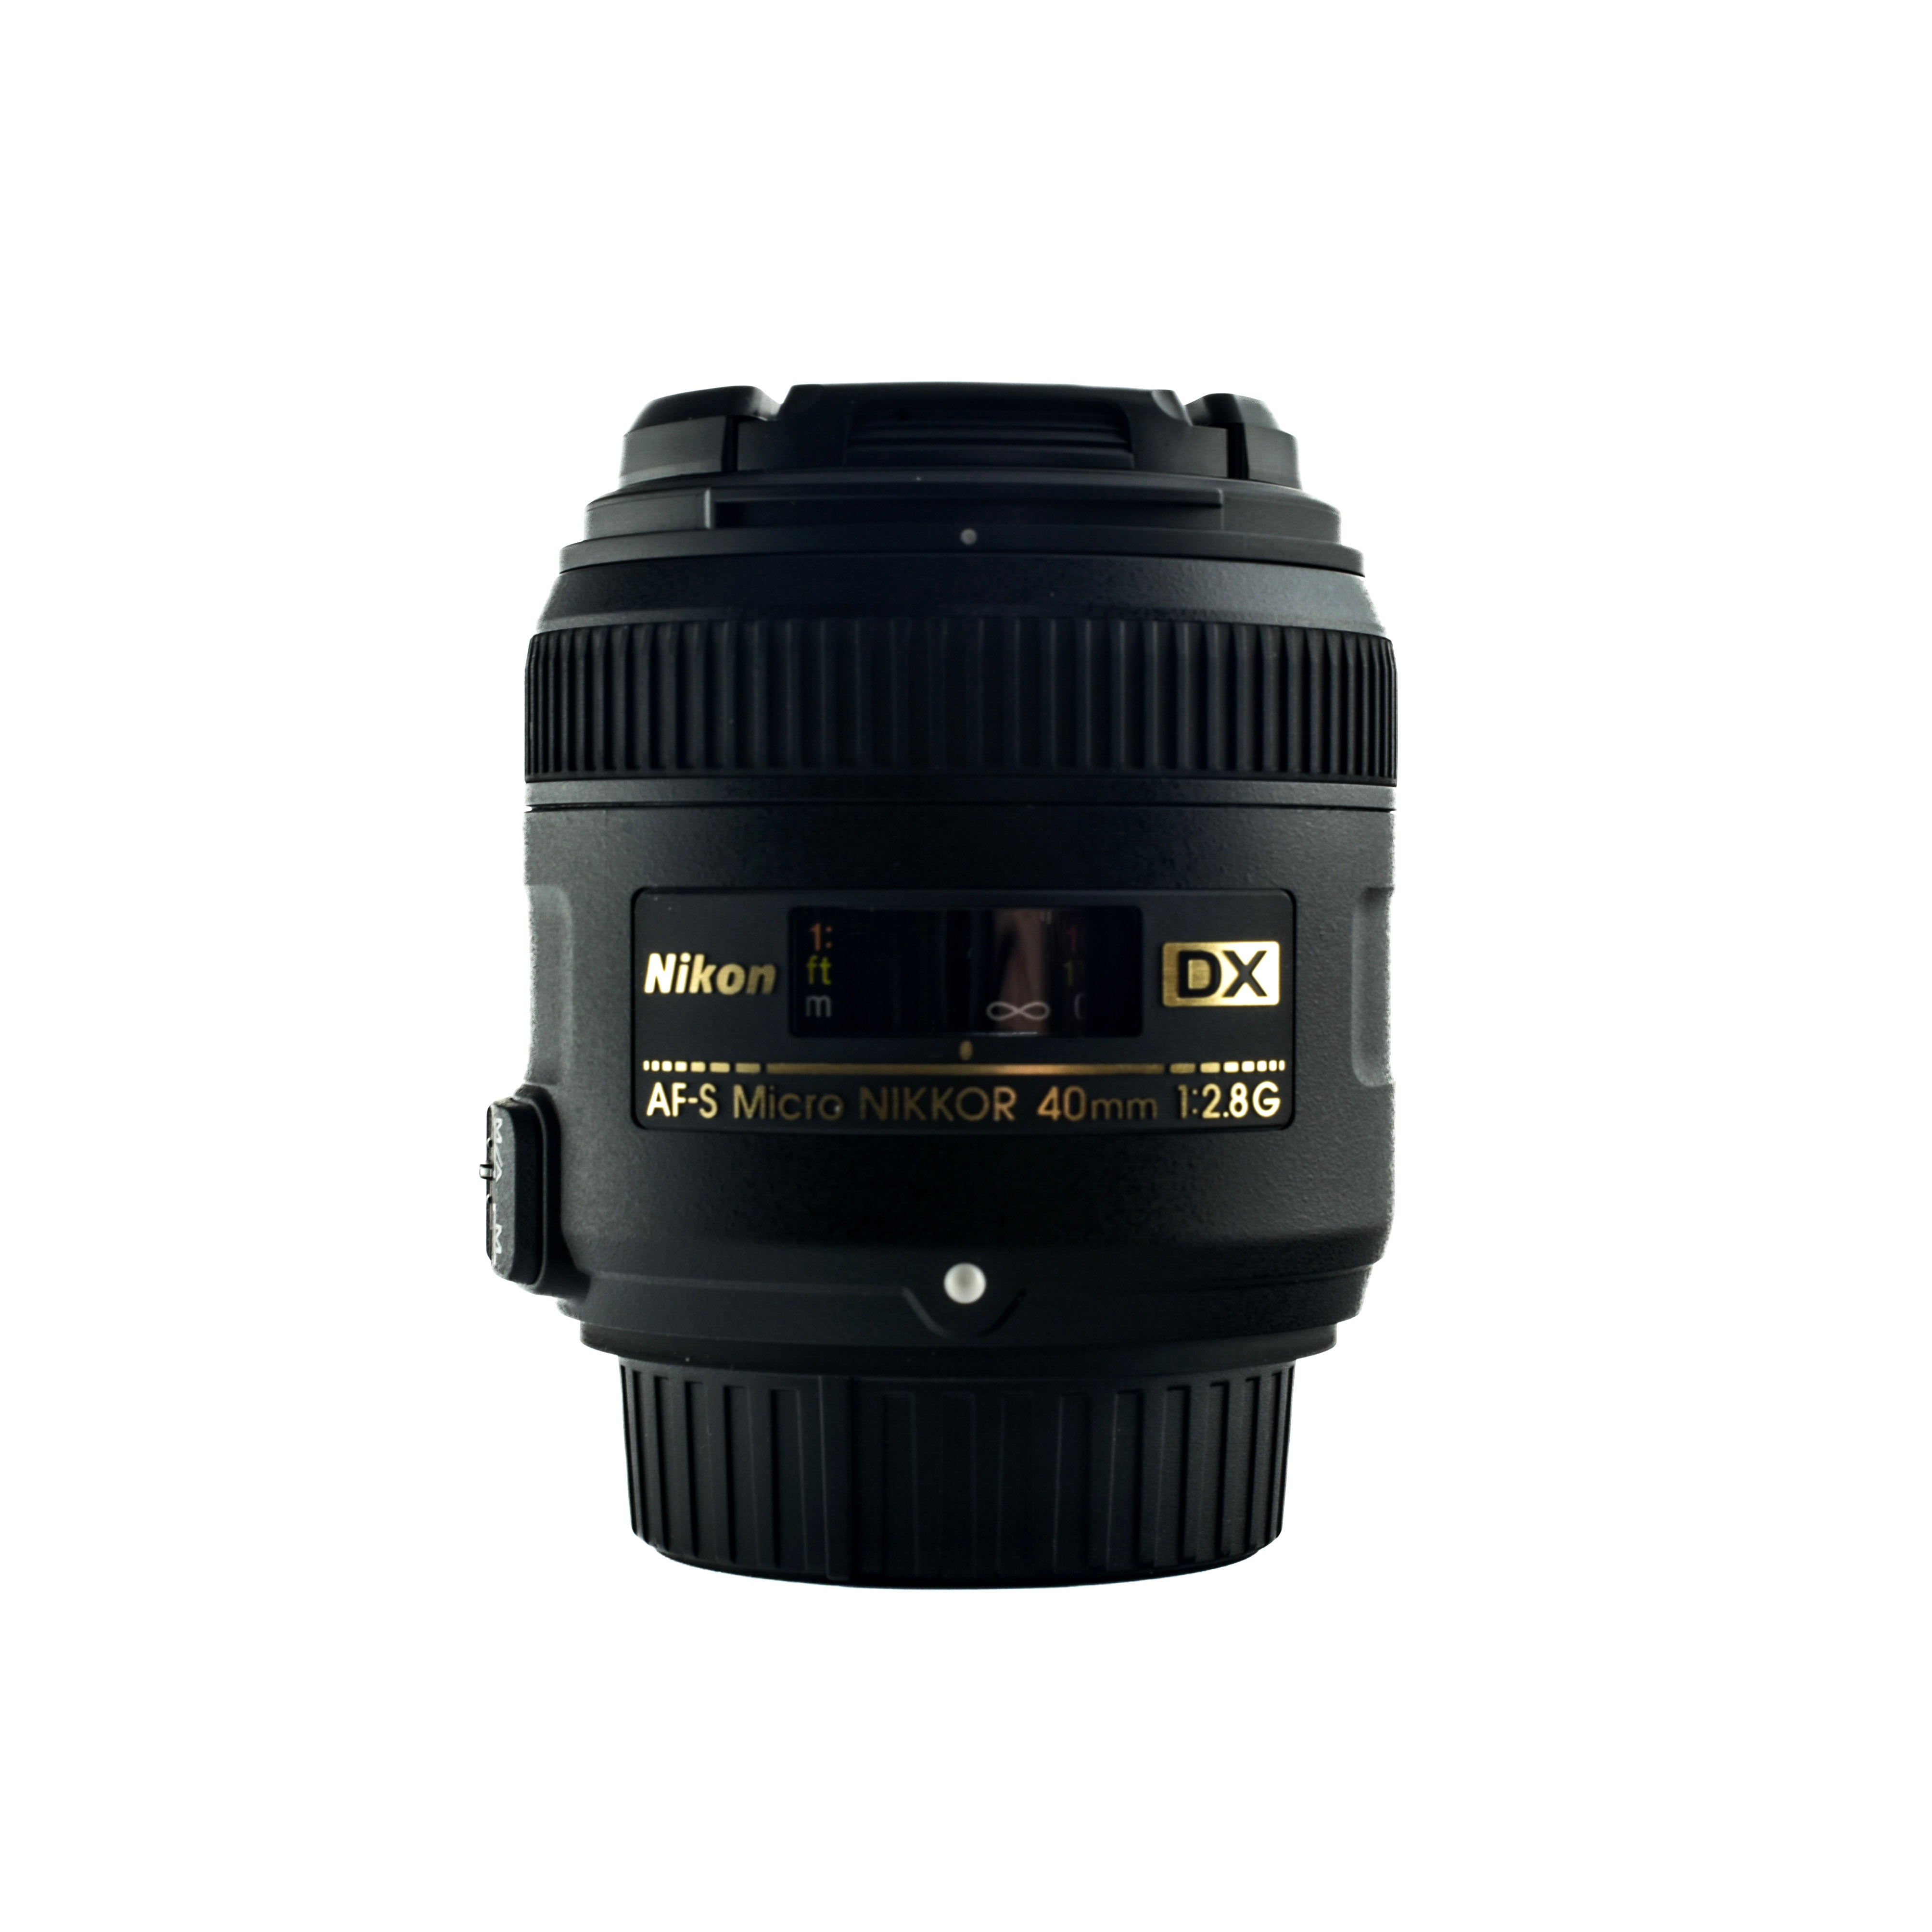 Nikkor 40mm Af-S DX f2.8G Micro lens